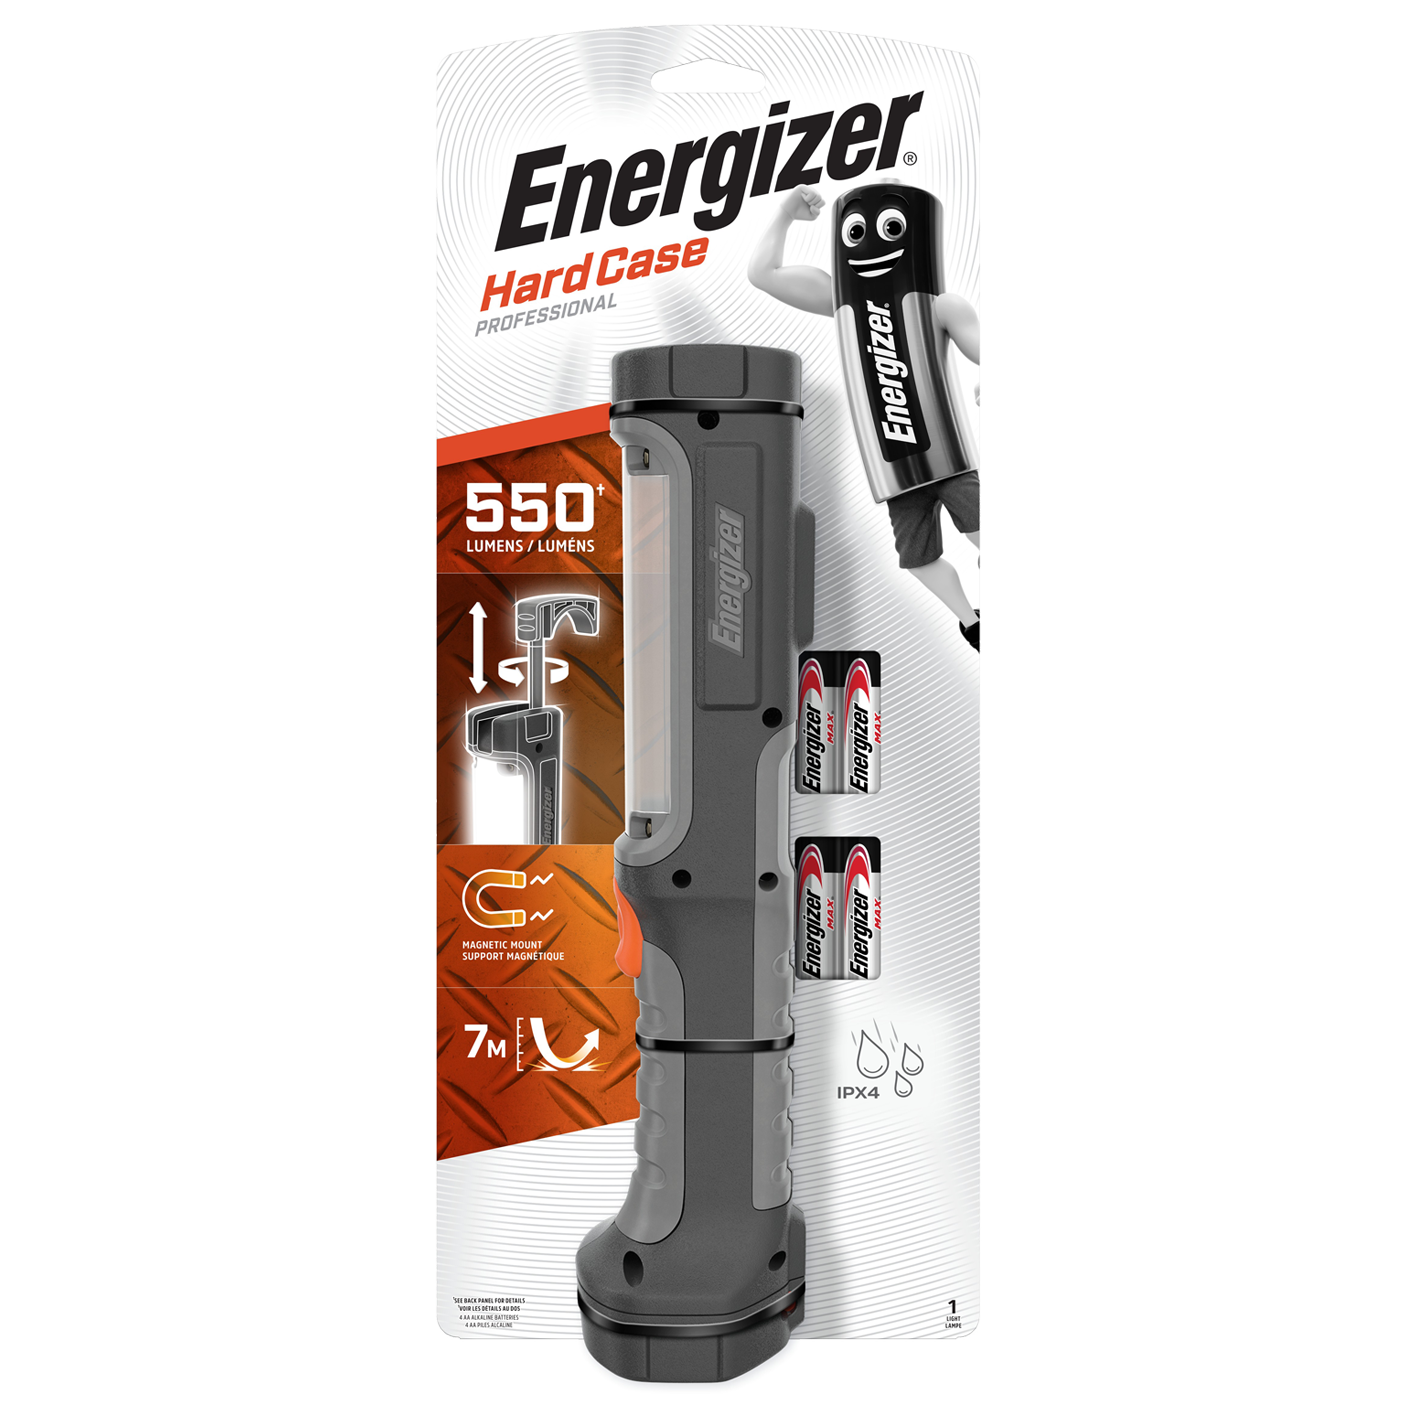 Luz de trabajo Energizer Hardcase Pro de 550 lúmenes con 4 pilas AA